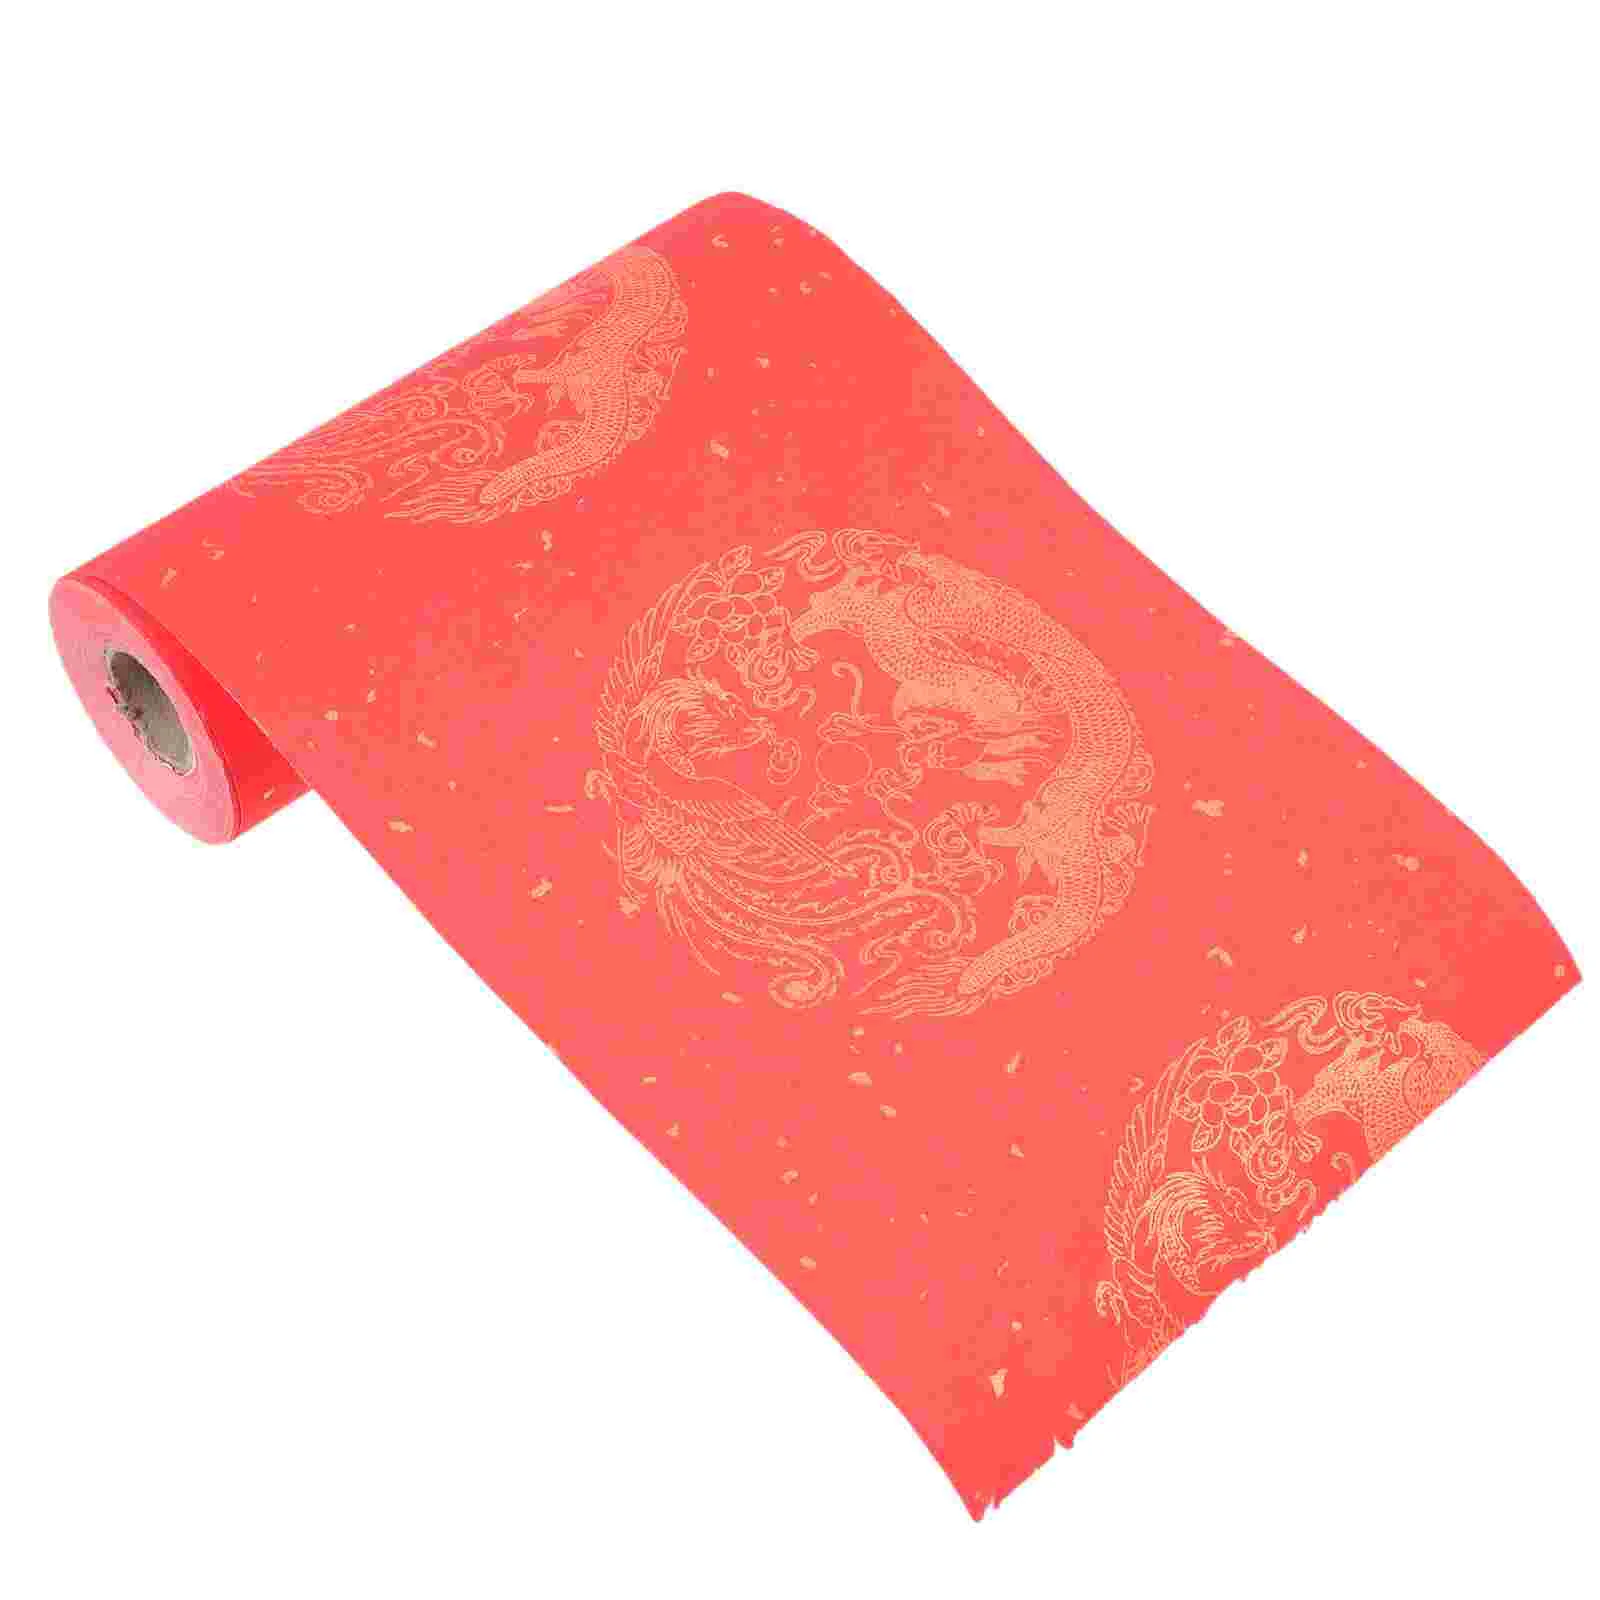 

Китайские пары, материал Xuan, красная каллиграфия, рисовый праздник весны